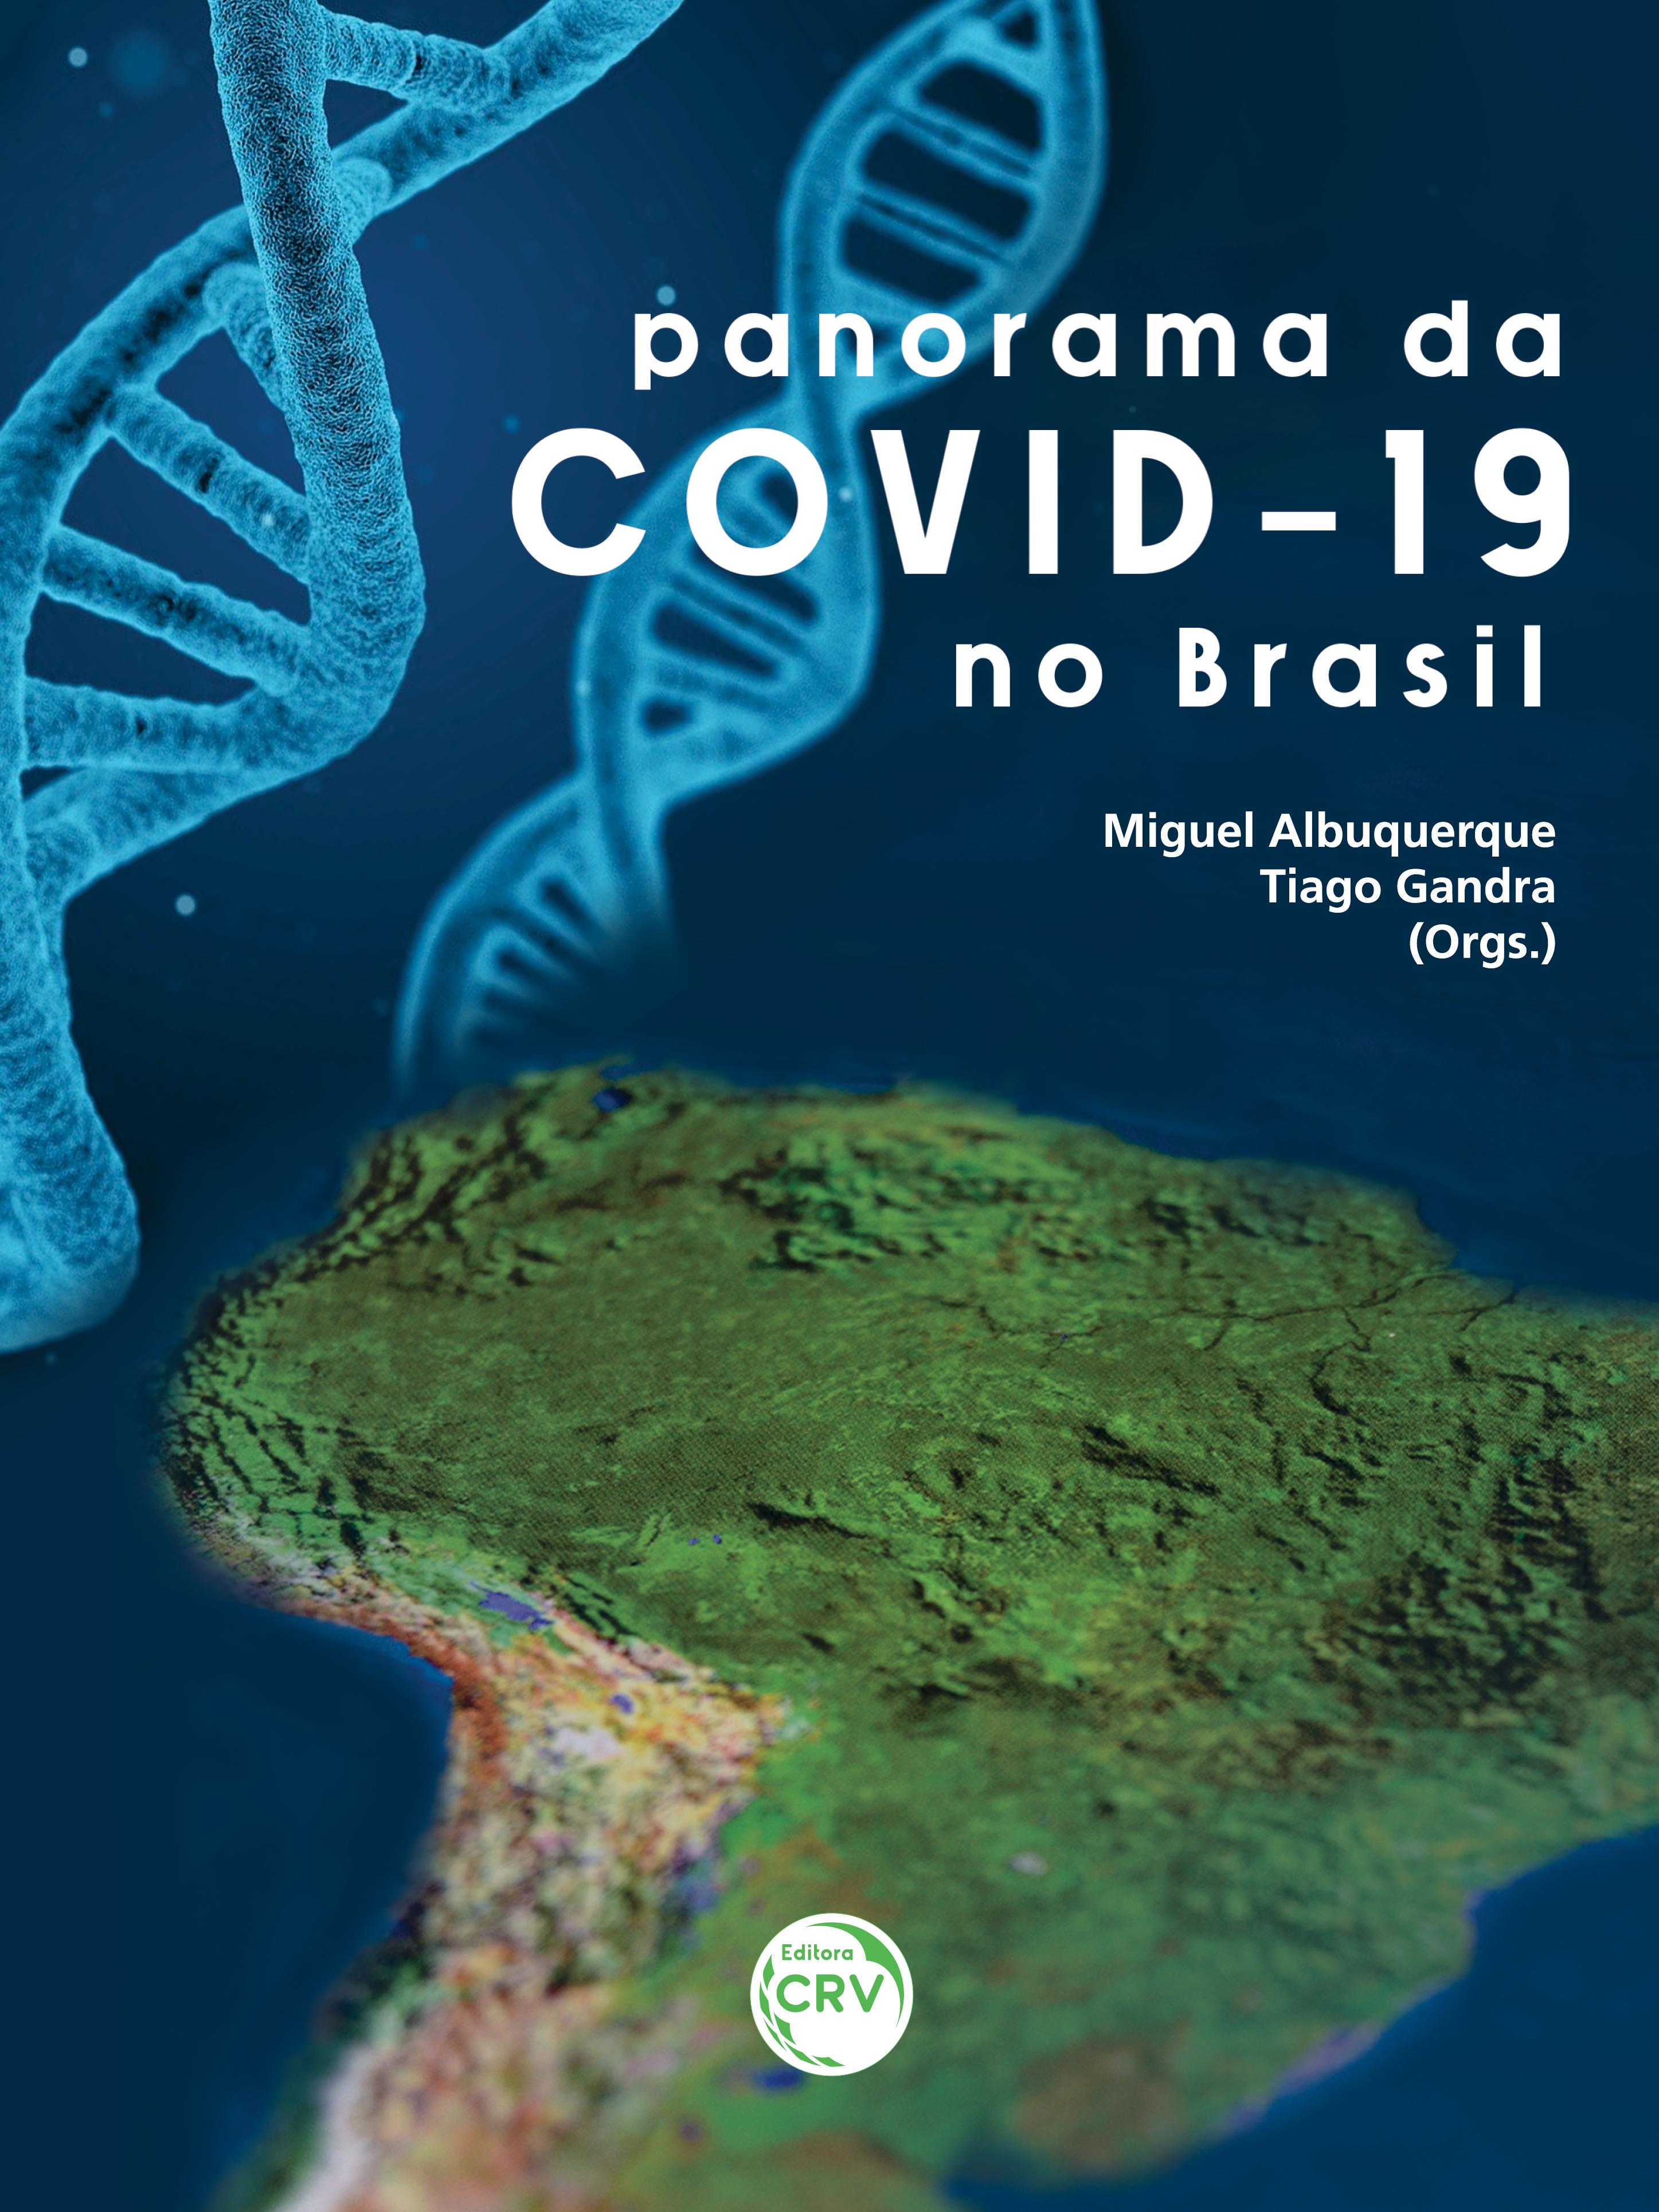 PANORAMA DA COVID-19 NO BRASIL